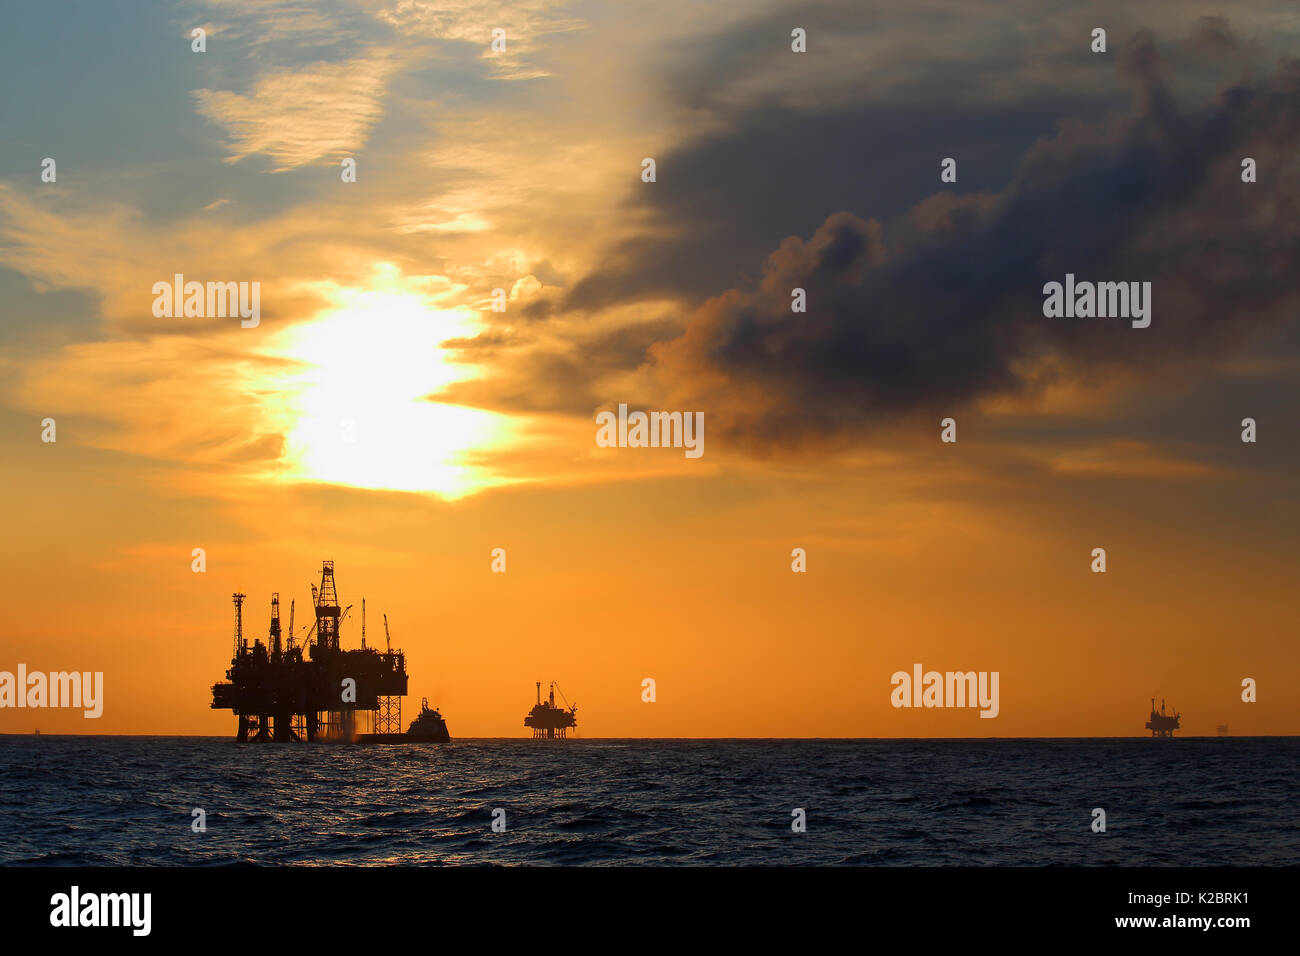 Années 40' oilfield au coucher du soleil, de la mer du Nord, octobre 2014. Tous les non-usages de rédaction doivent être effacés individuellement. Banque D'Images